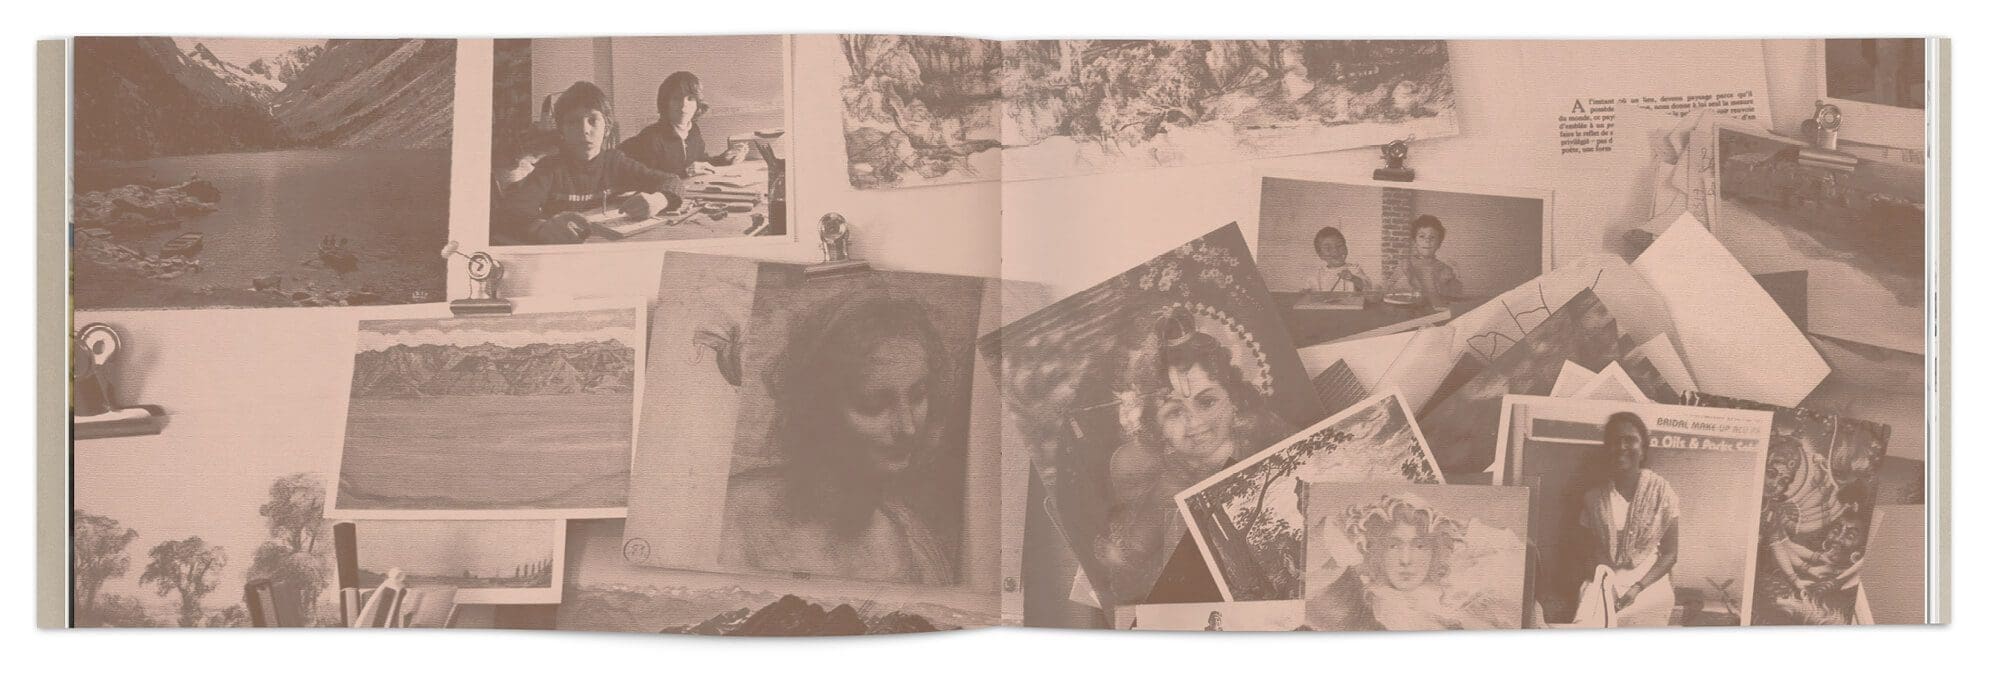 Patchwork de Photos d'Hélène Muheim, amis et famille dans son livre Quelque part dans l'inachevé, graphisme IchetKar